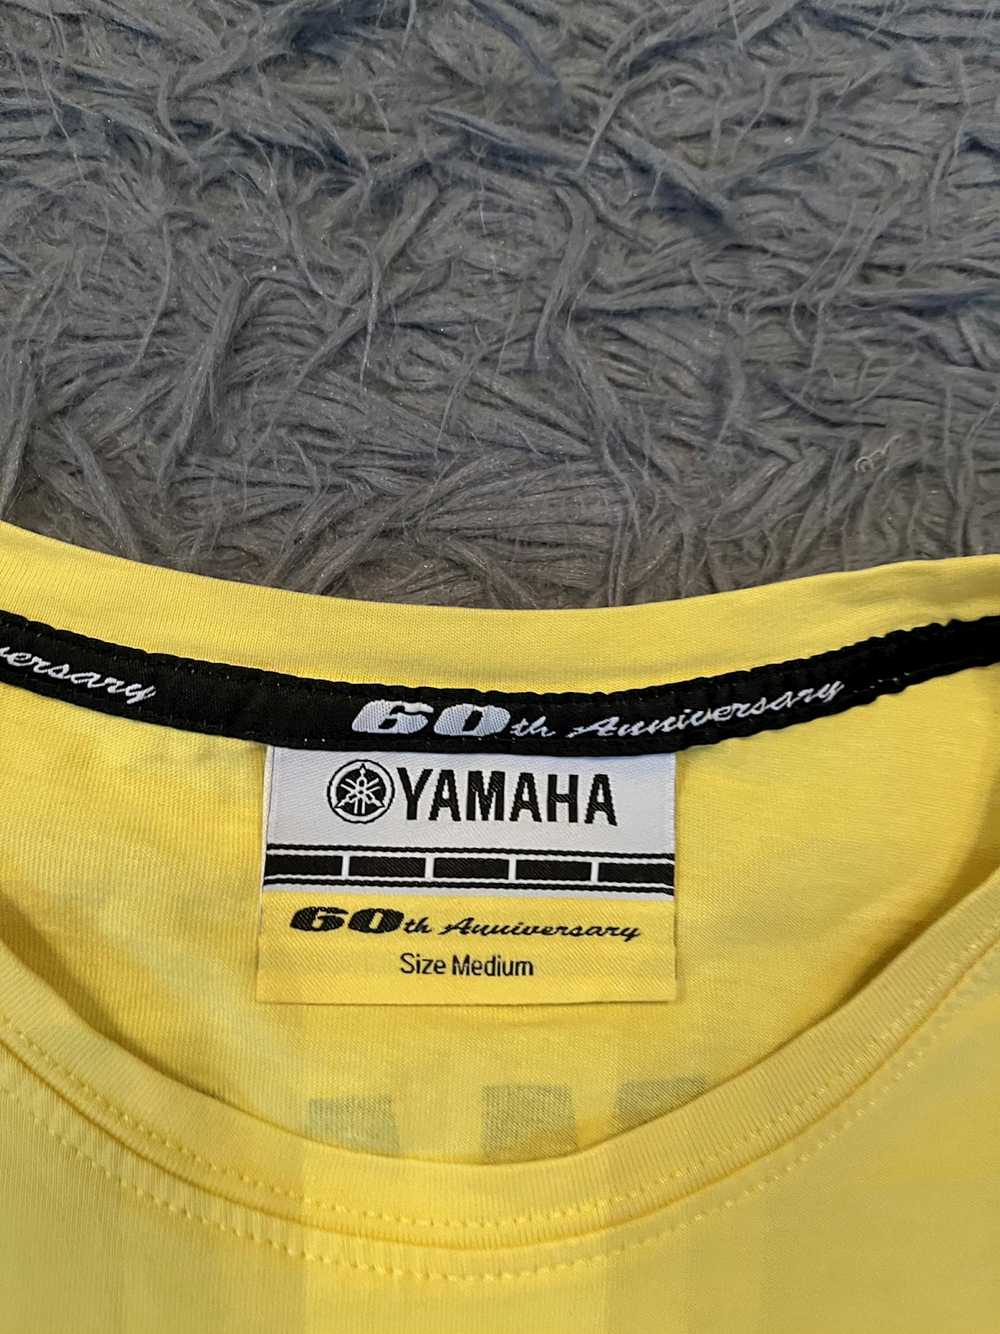 Racing × Vintage × Yamaha Yamaha 60th anniversary… - image 3